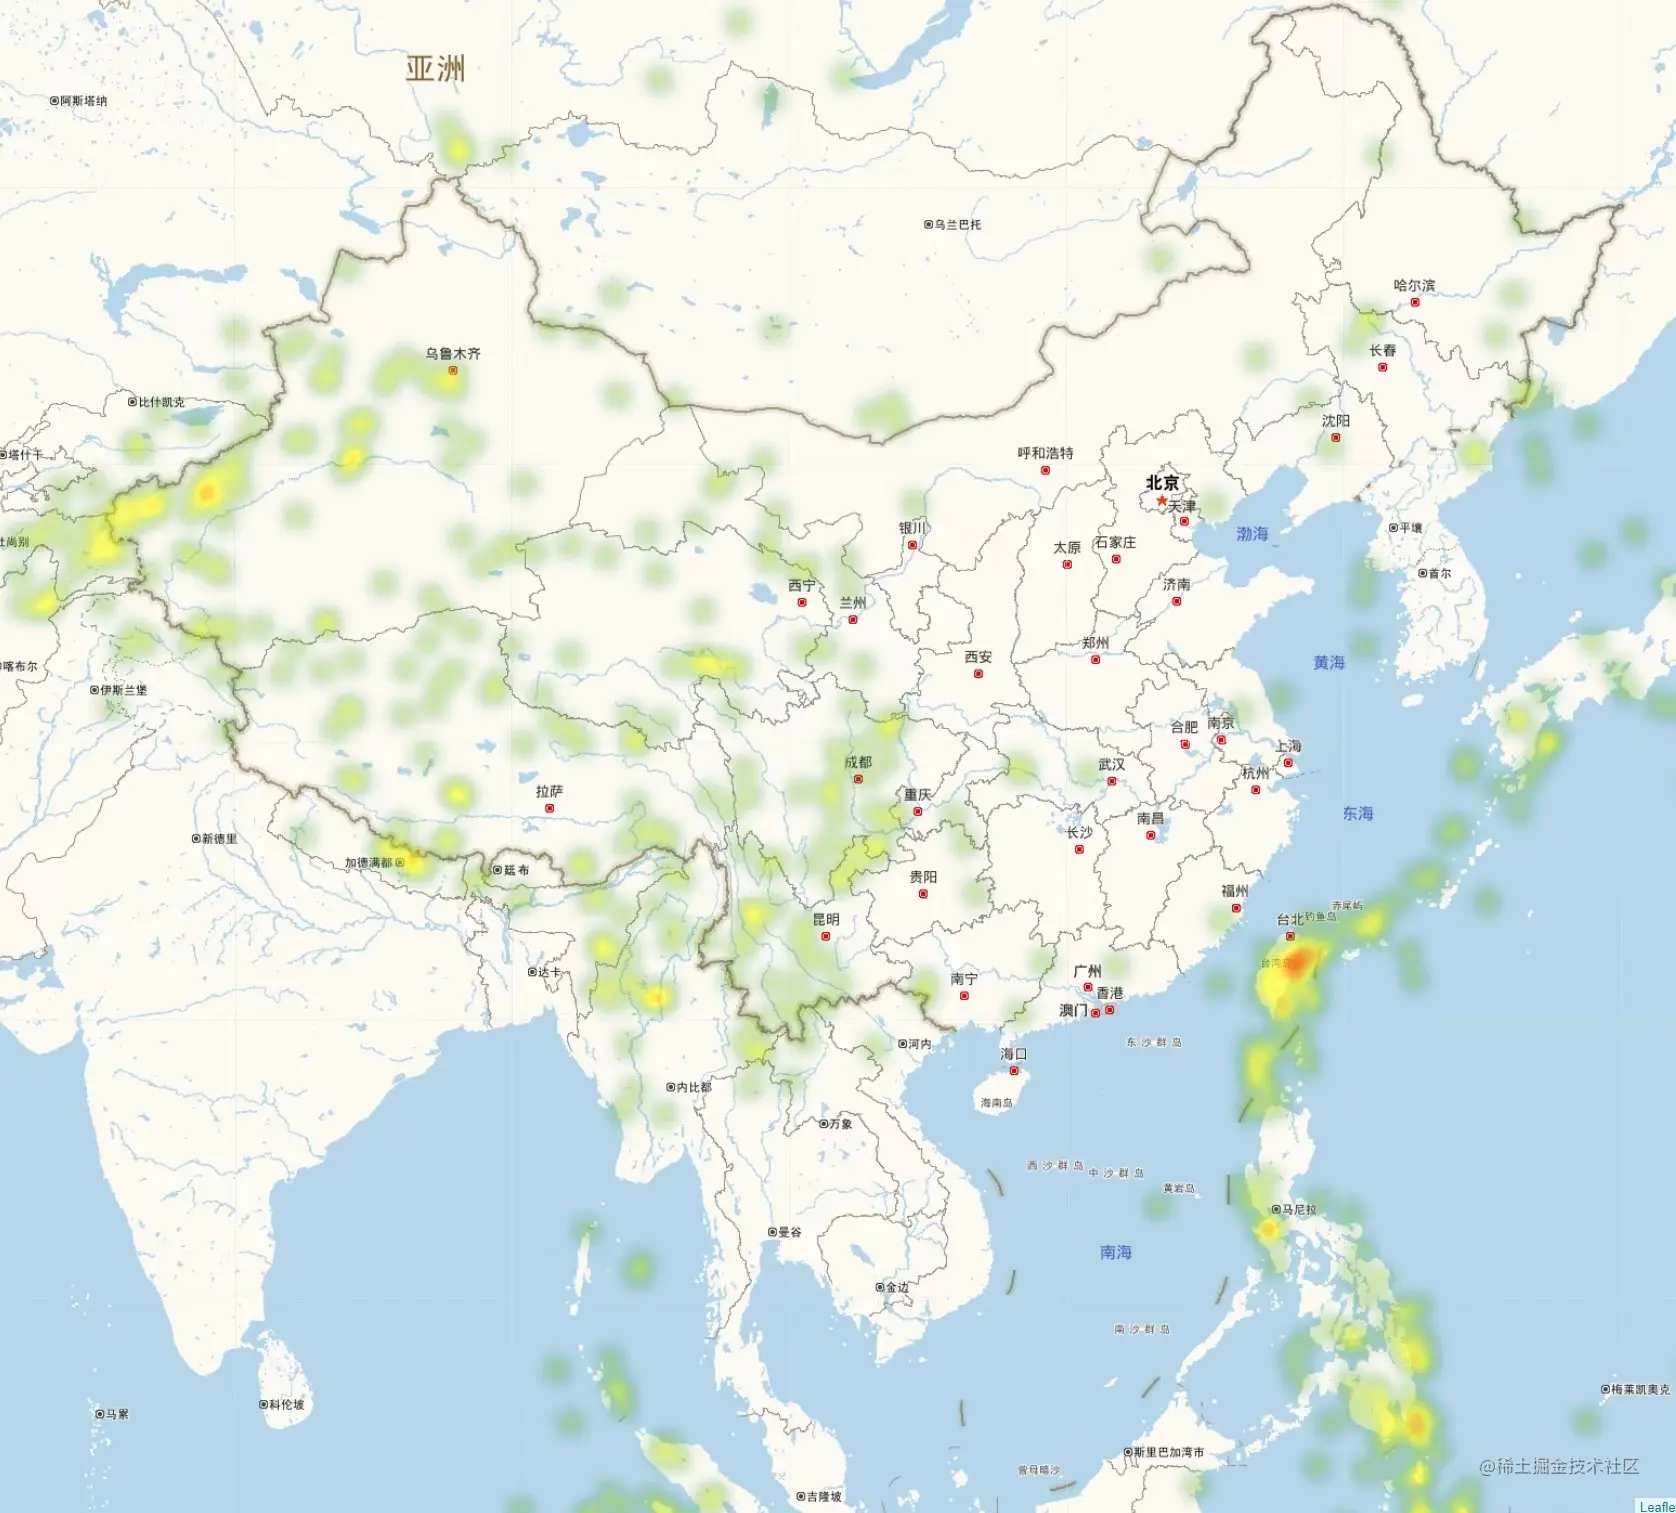  Thermal map of earthquake distribution 